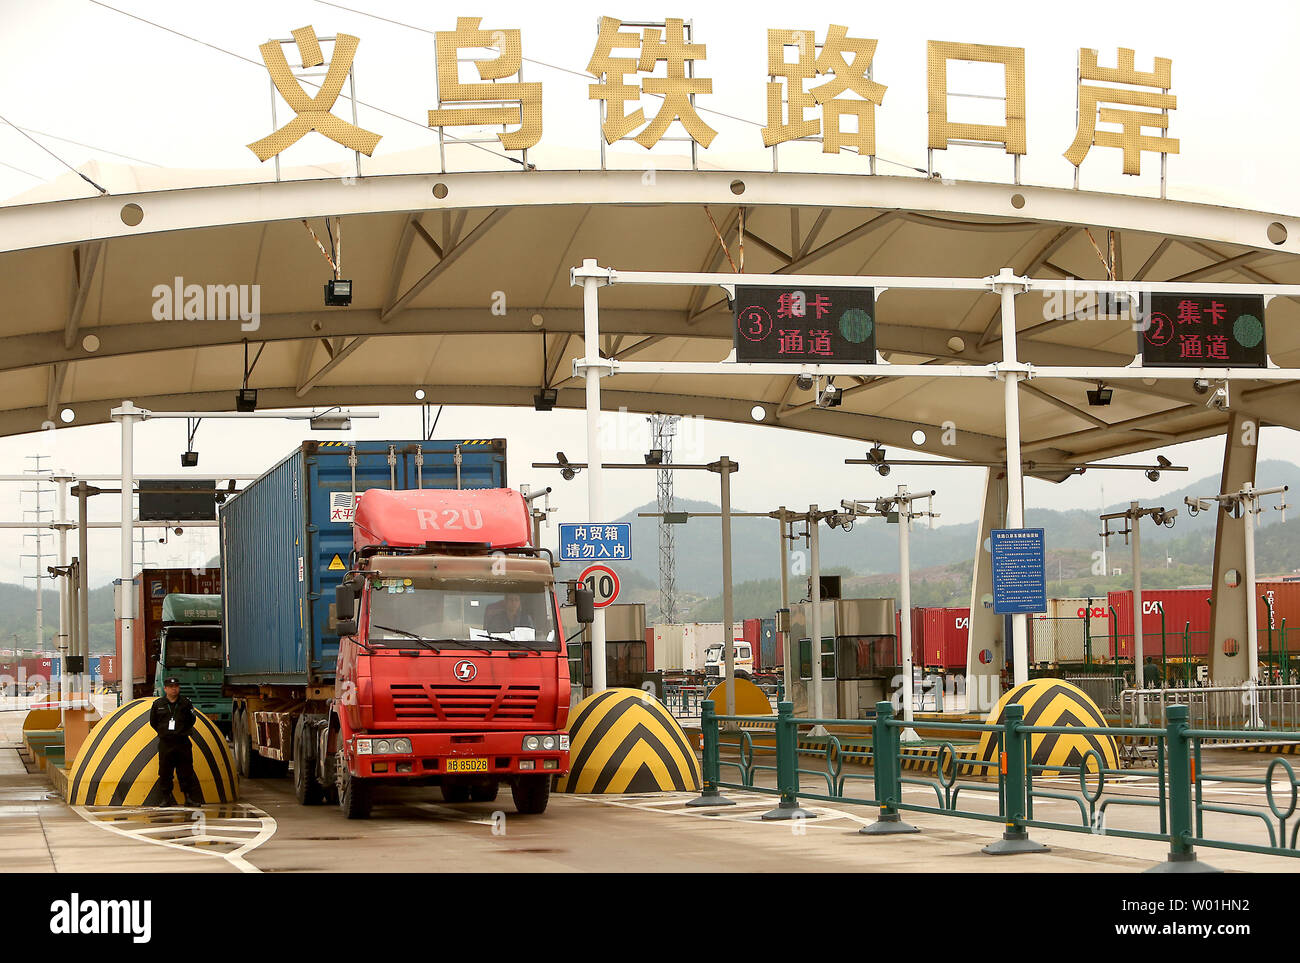 Container-Lkw der Yiwu Railway Cargo Station abfahren in Wuhan, Provinz Zhejiang, am 13. April 2019. Die Yiwu - London Eisenbahnlinie ist die längste Eisenbahn freight Route in der Welt, zwischen China und Europa als Handel erhöht sich zwischen den beiden globalen Wirtschaftsmächte. Foto von Stephen Rasierer/UPI Stockfoto